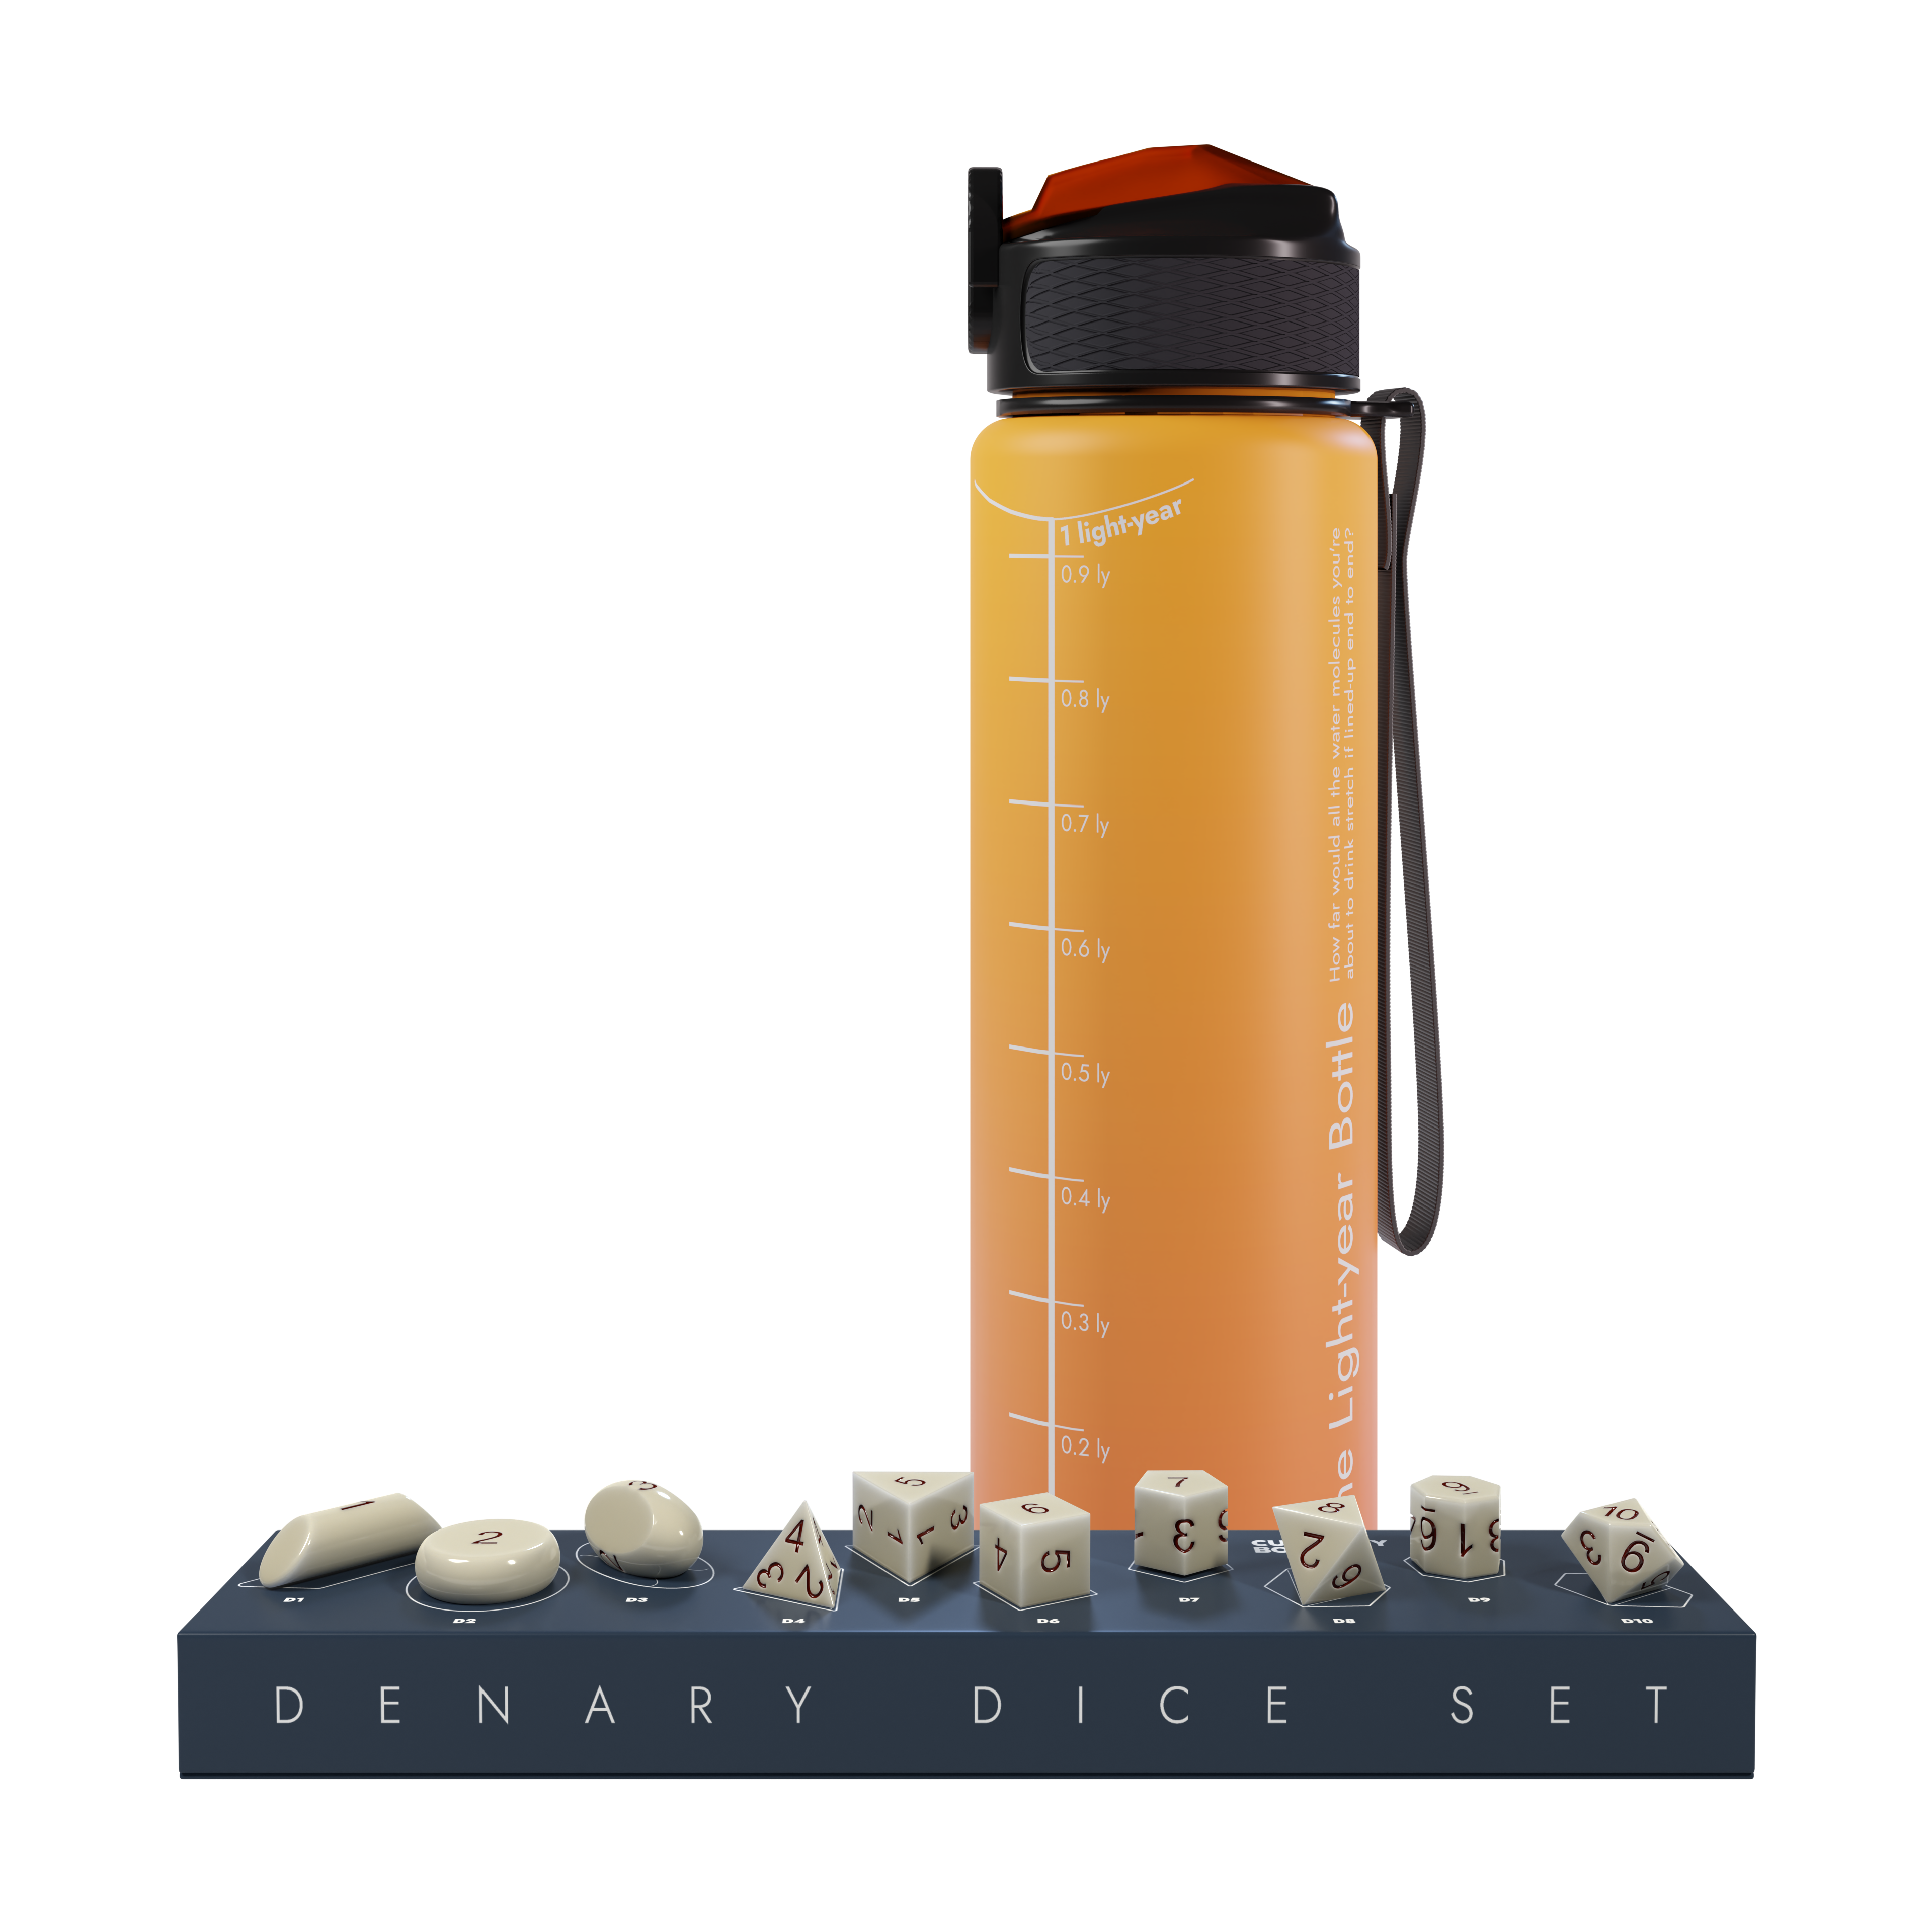 Denary Dice + Lightyear Water Bottle bundle